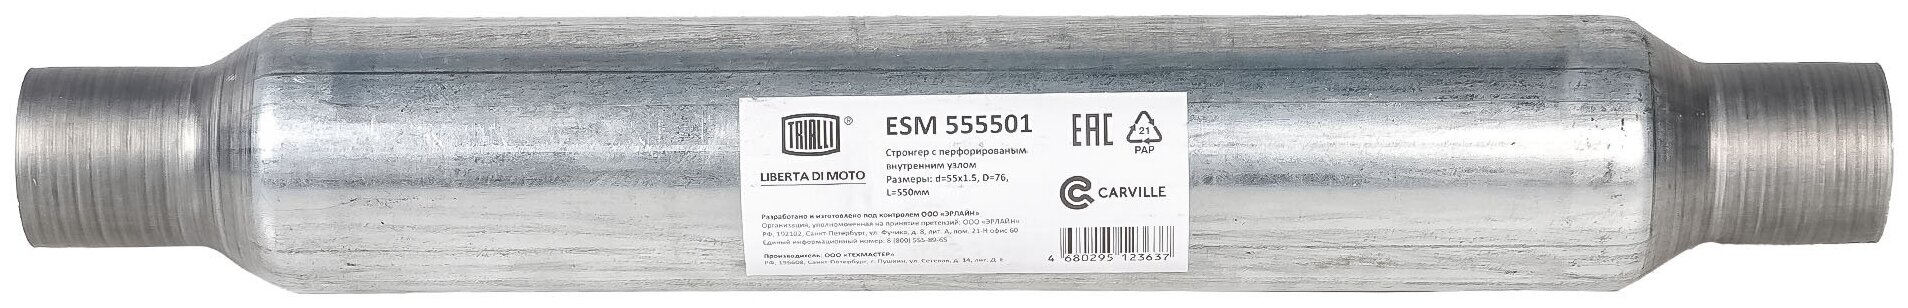 Стронгер 55550-83 с перфорированным внутренним узлом (алюминизированная сталь) ESM 555501 TRIALLI